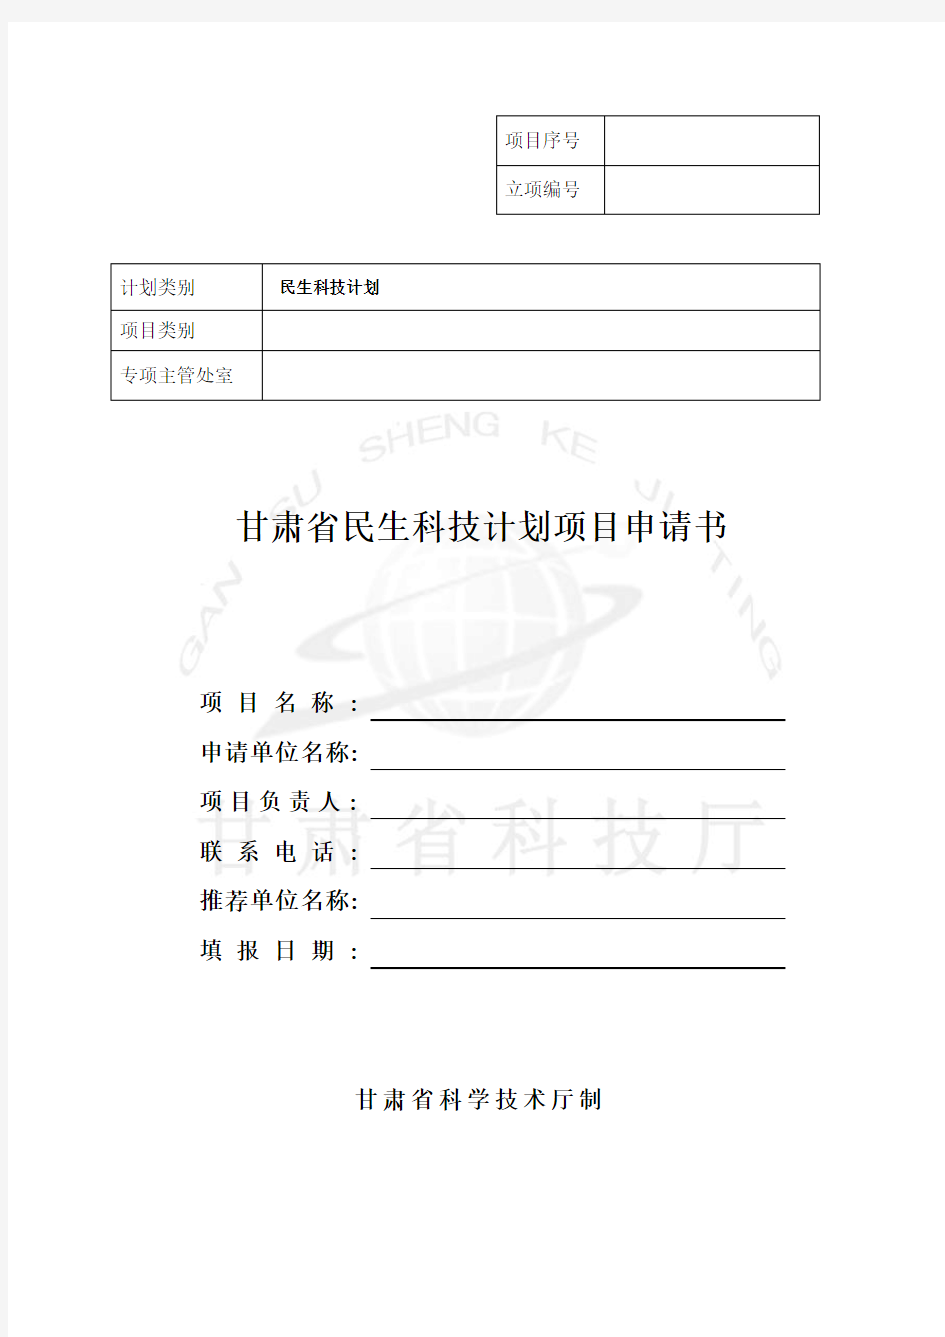 甘肃省民生科技计划项目申请书 - 甘肃省科学技术厅